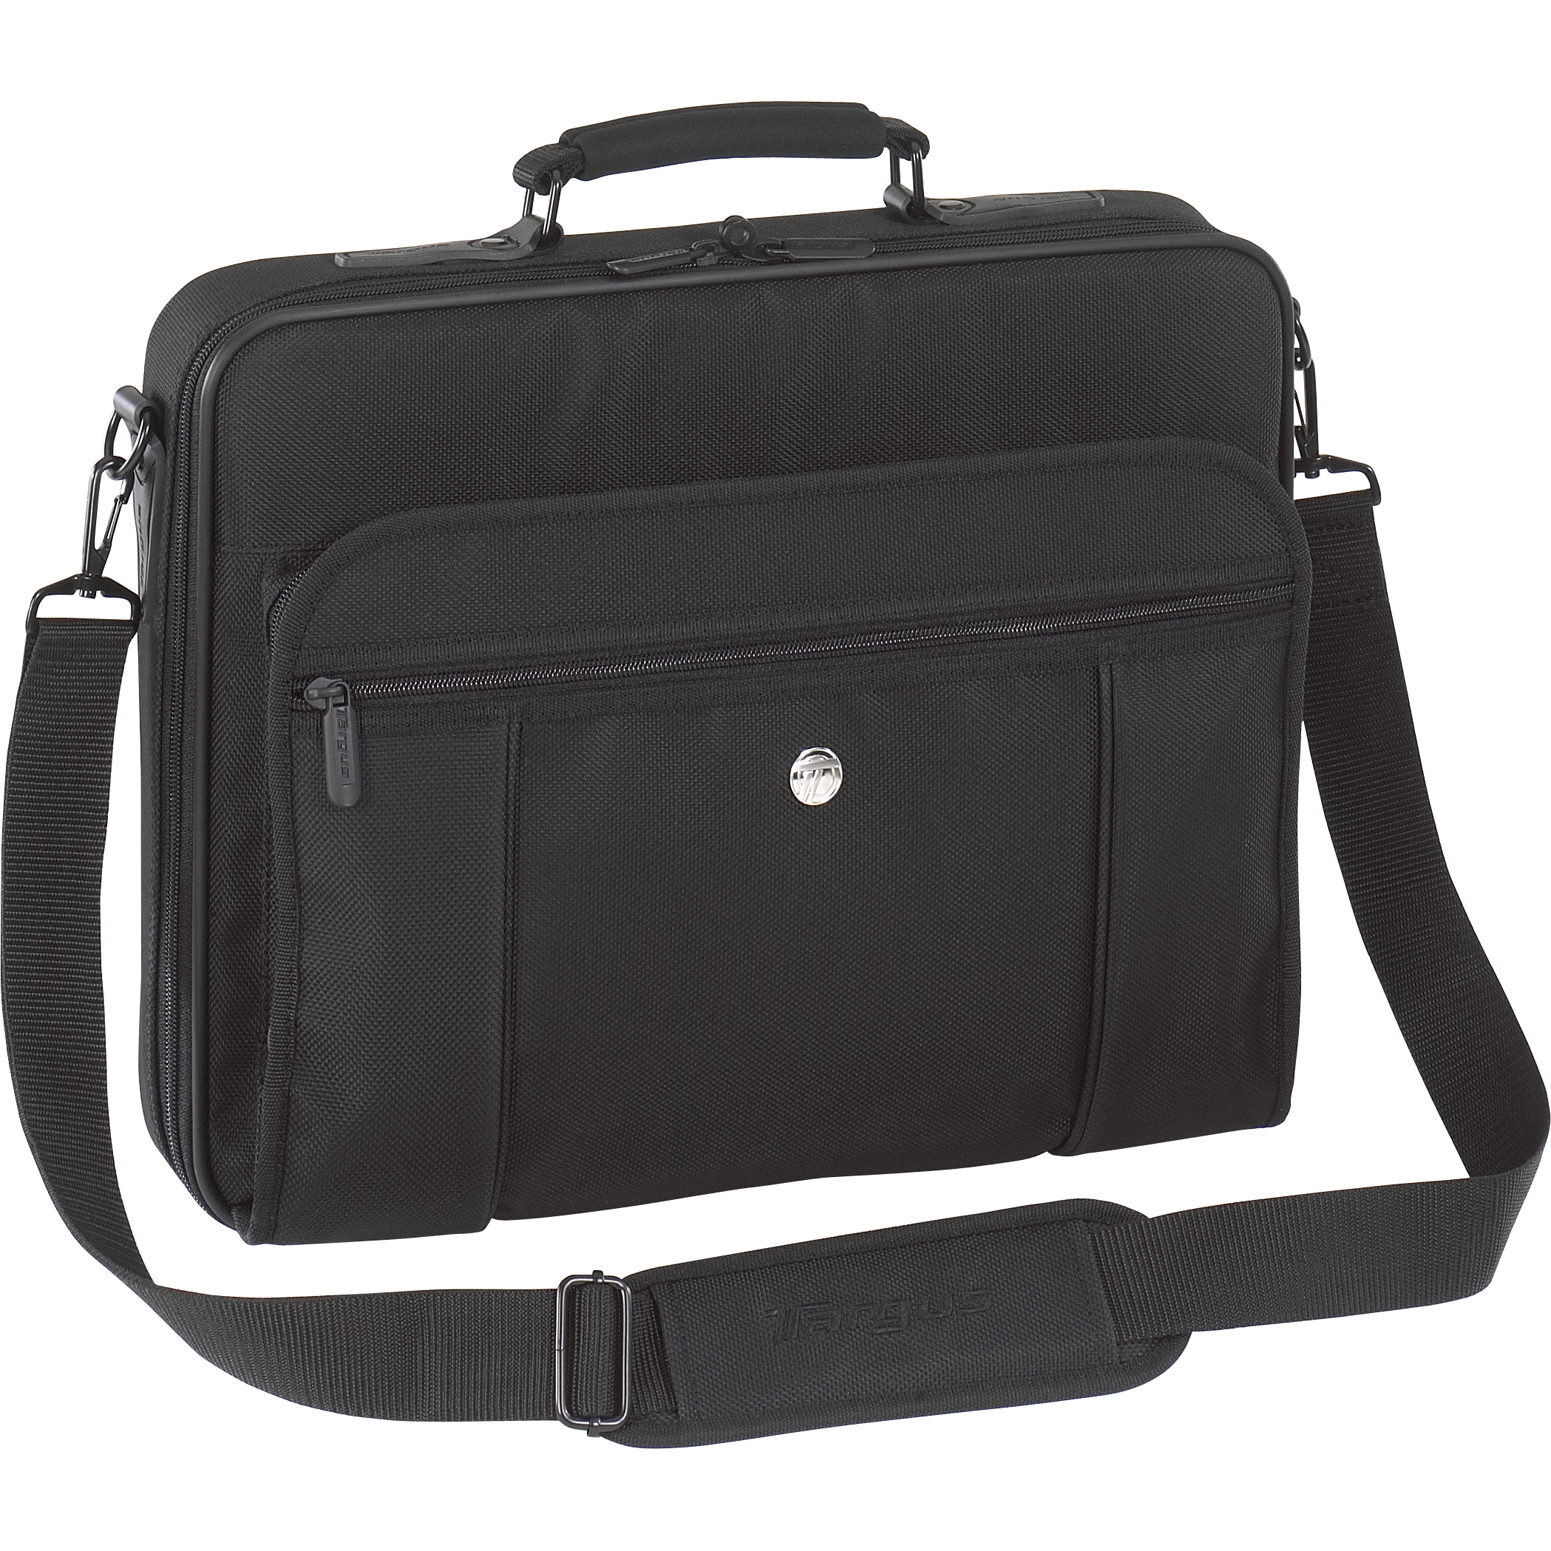 15.4” Premiere Laptop Case - TVR300 - Black: Briefcases: Targus